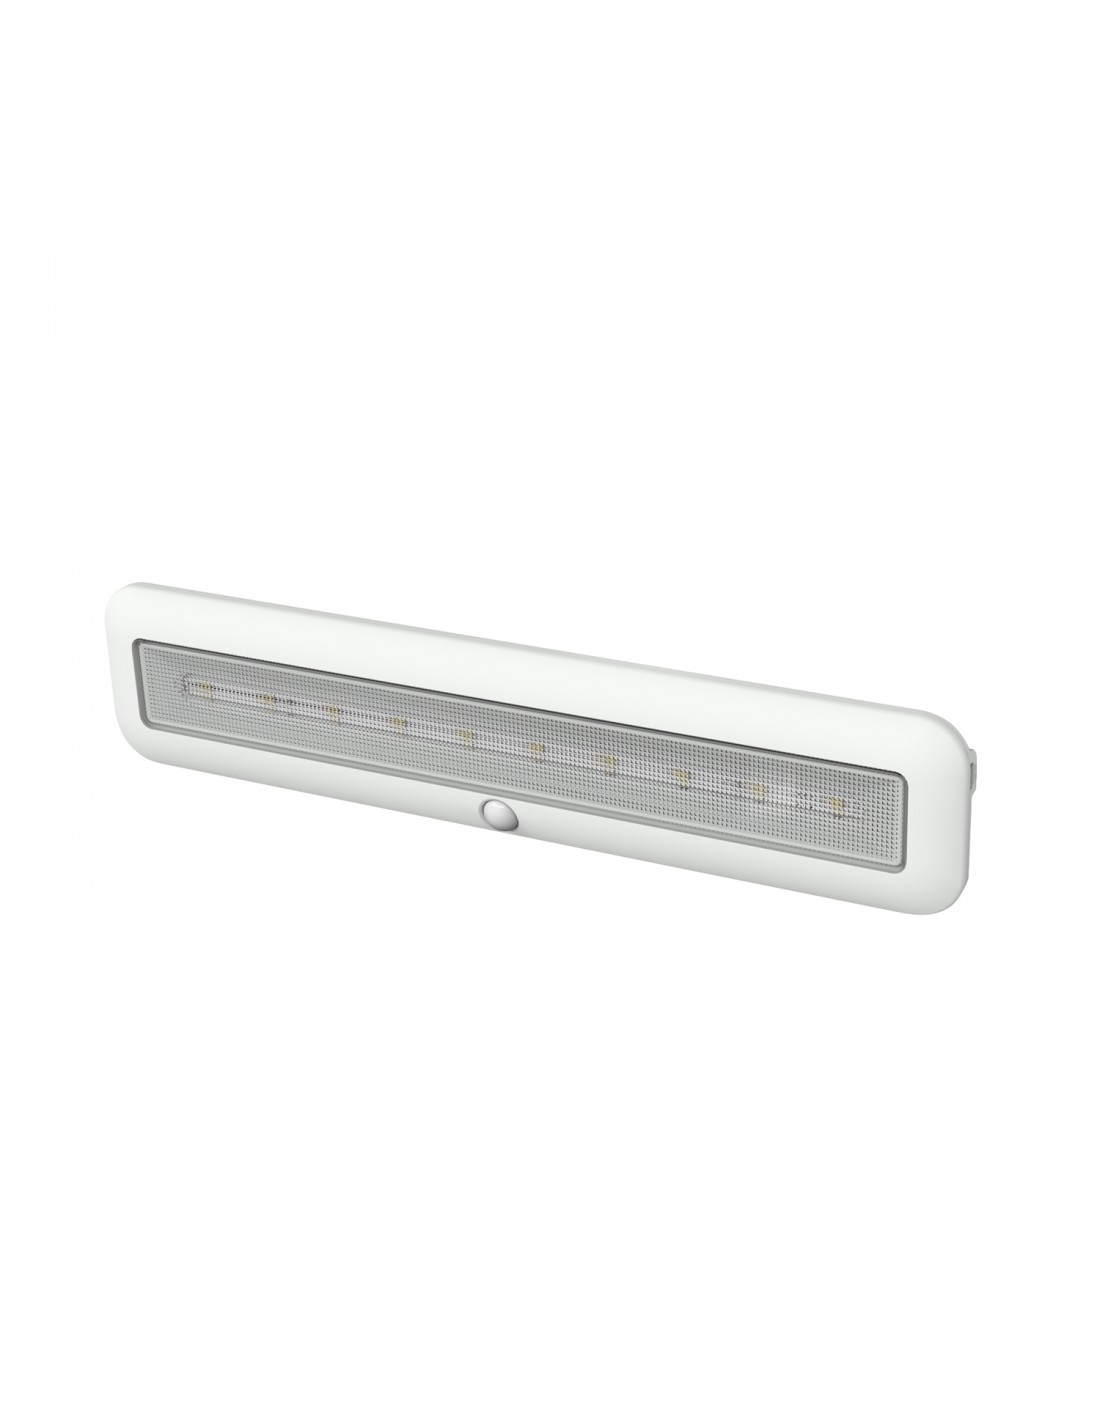 Velamp LAGOON: wiederaufladbarer 30cm LED-Streifen für Schränke und Küchen. 200 Lumen. Mit PIR. Weiß